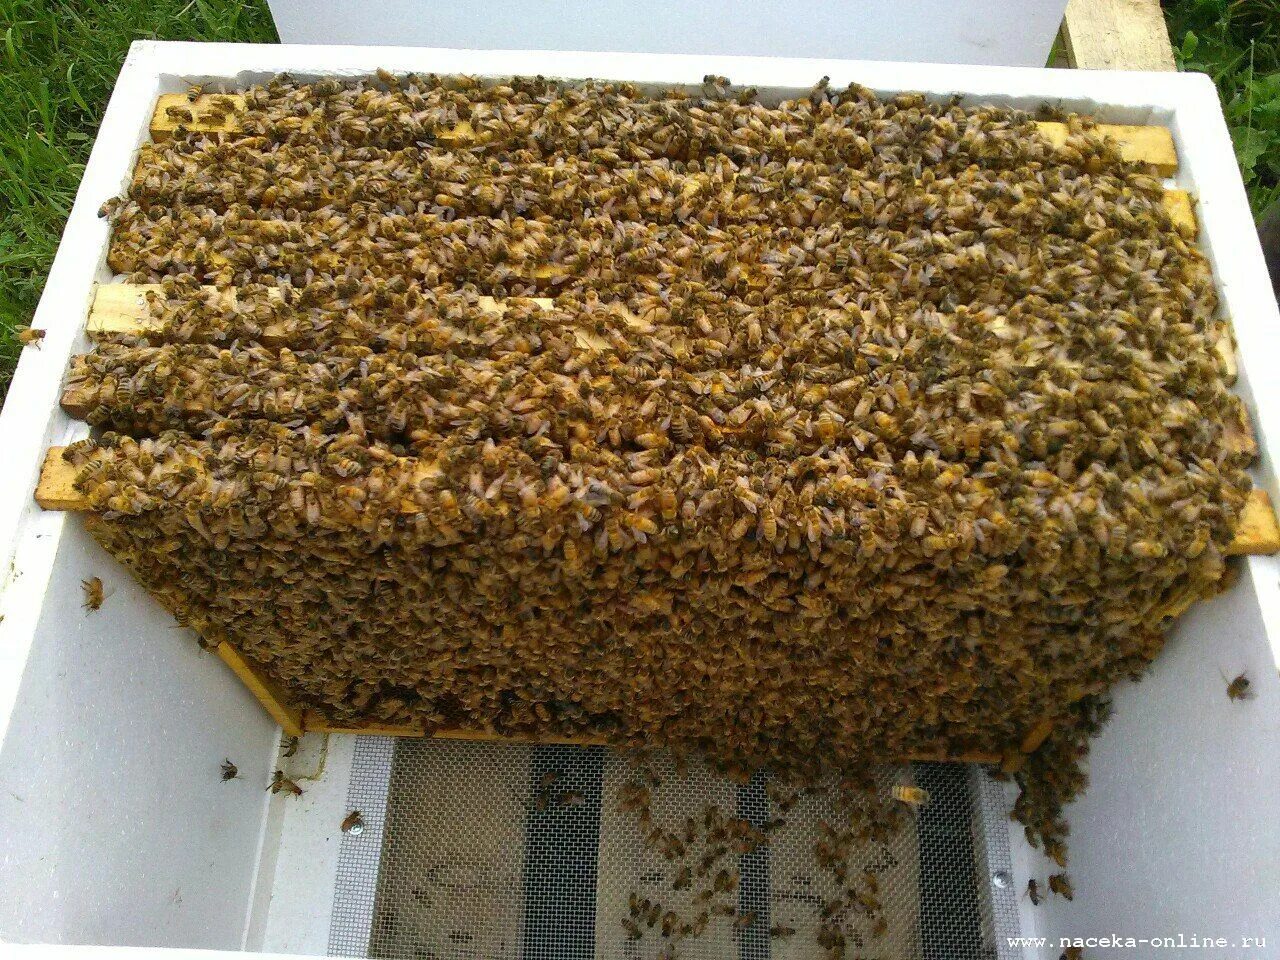 Купить пчелопакеты в воронежской области. Пчелопакеты Бакфаст. Пчелопакеты украинской Степной пчелы. Пчелиный пакет. Бессотовый пчелопакет.